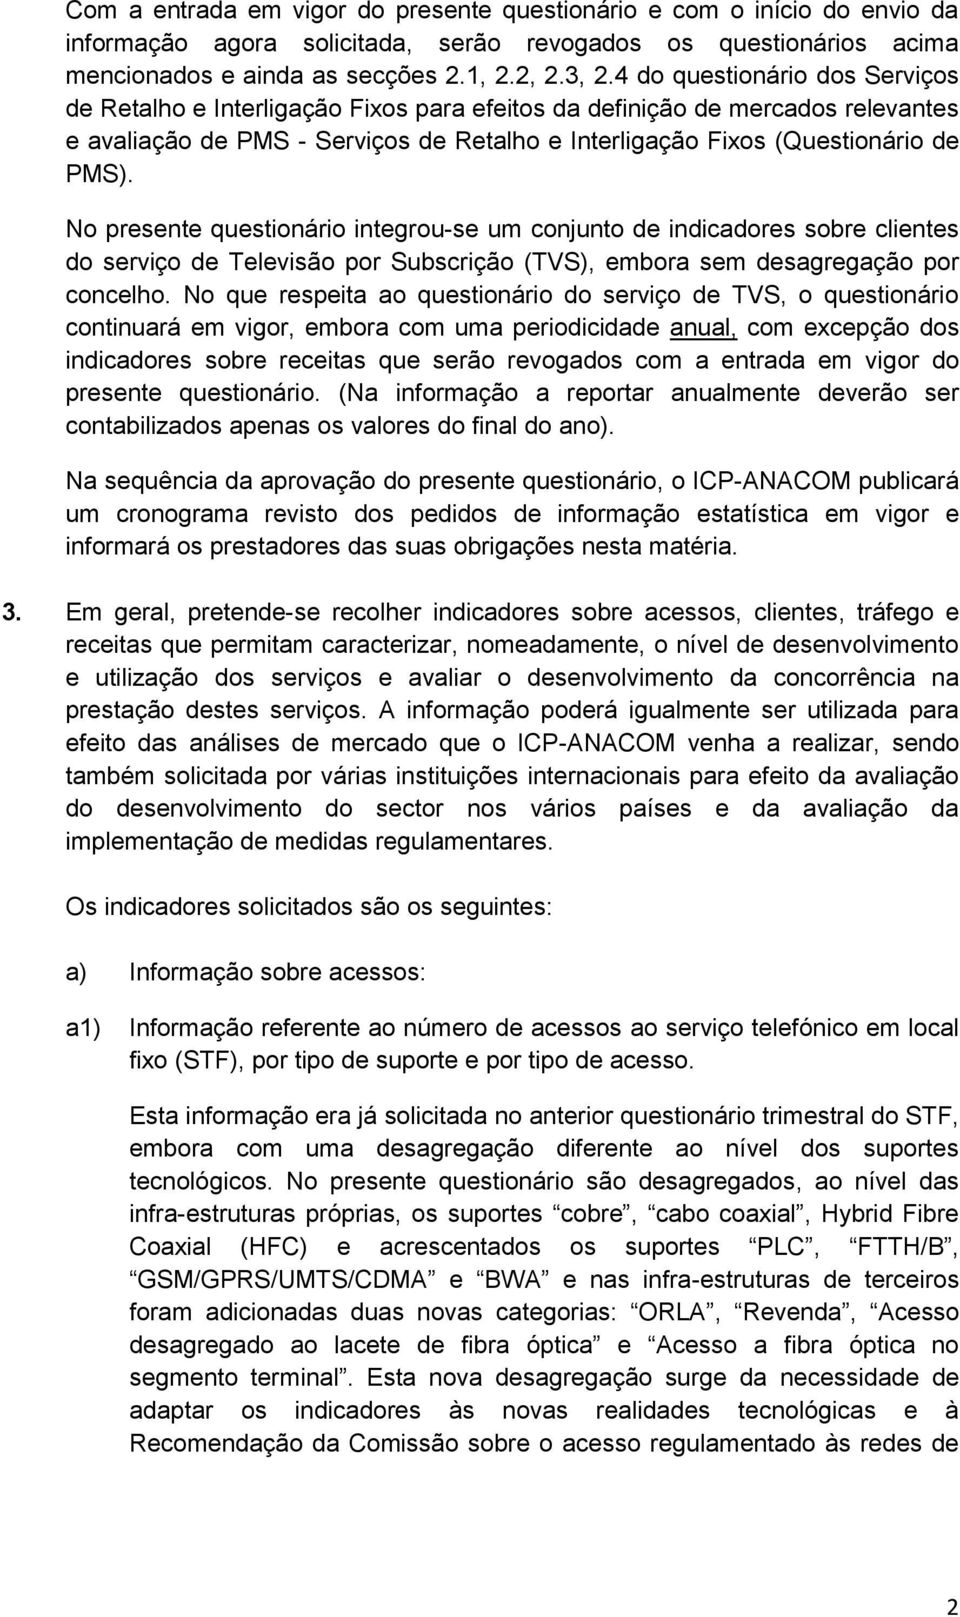 No presente questionário integrou-se um conjunto de indicadores sobre clientes do serviço de Televisão por Subscrição (TVS), embora sem desagregação por concelho.